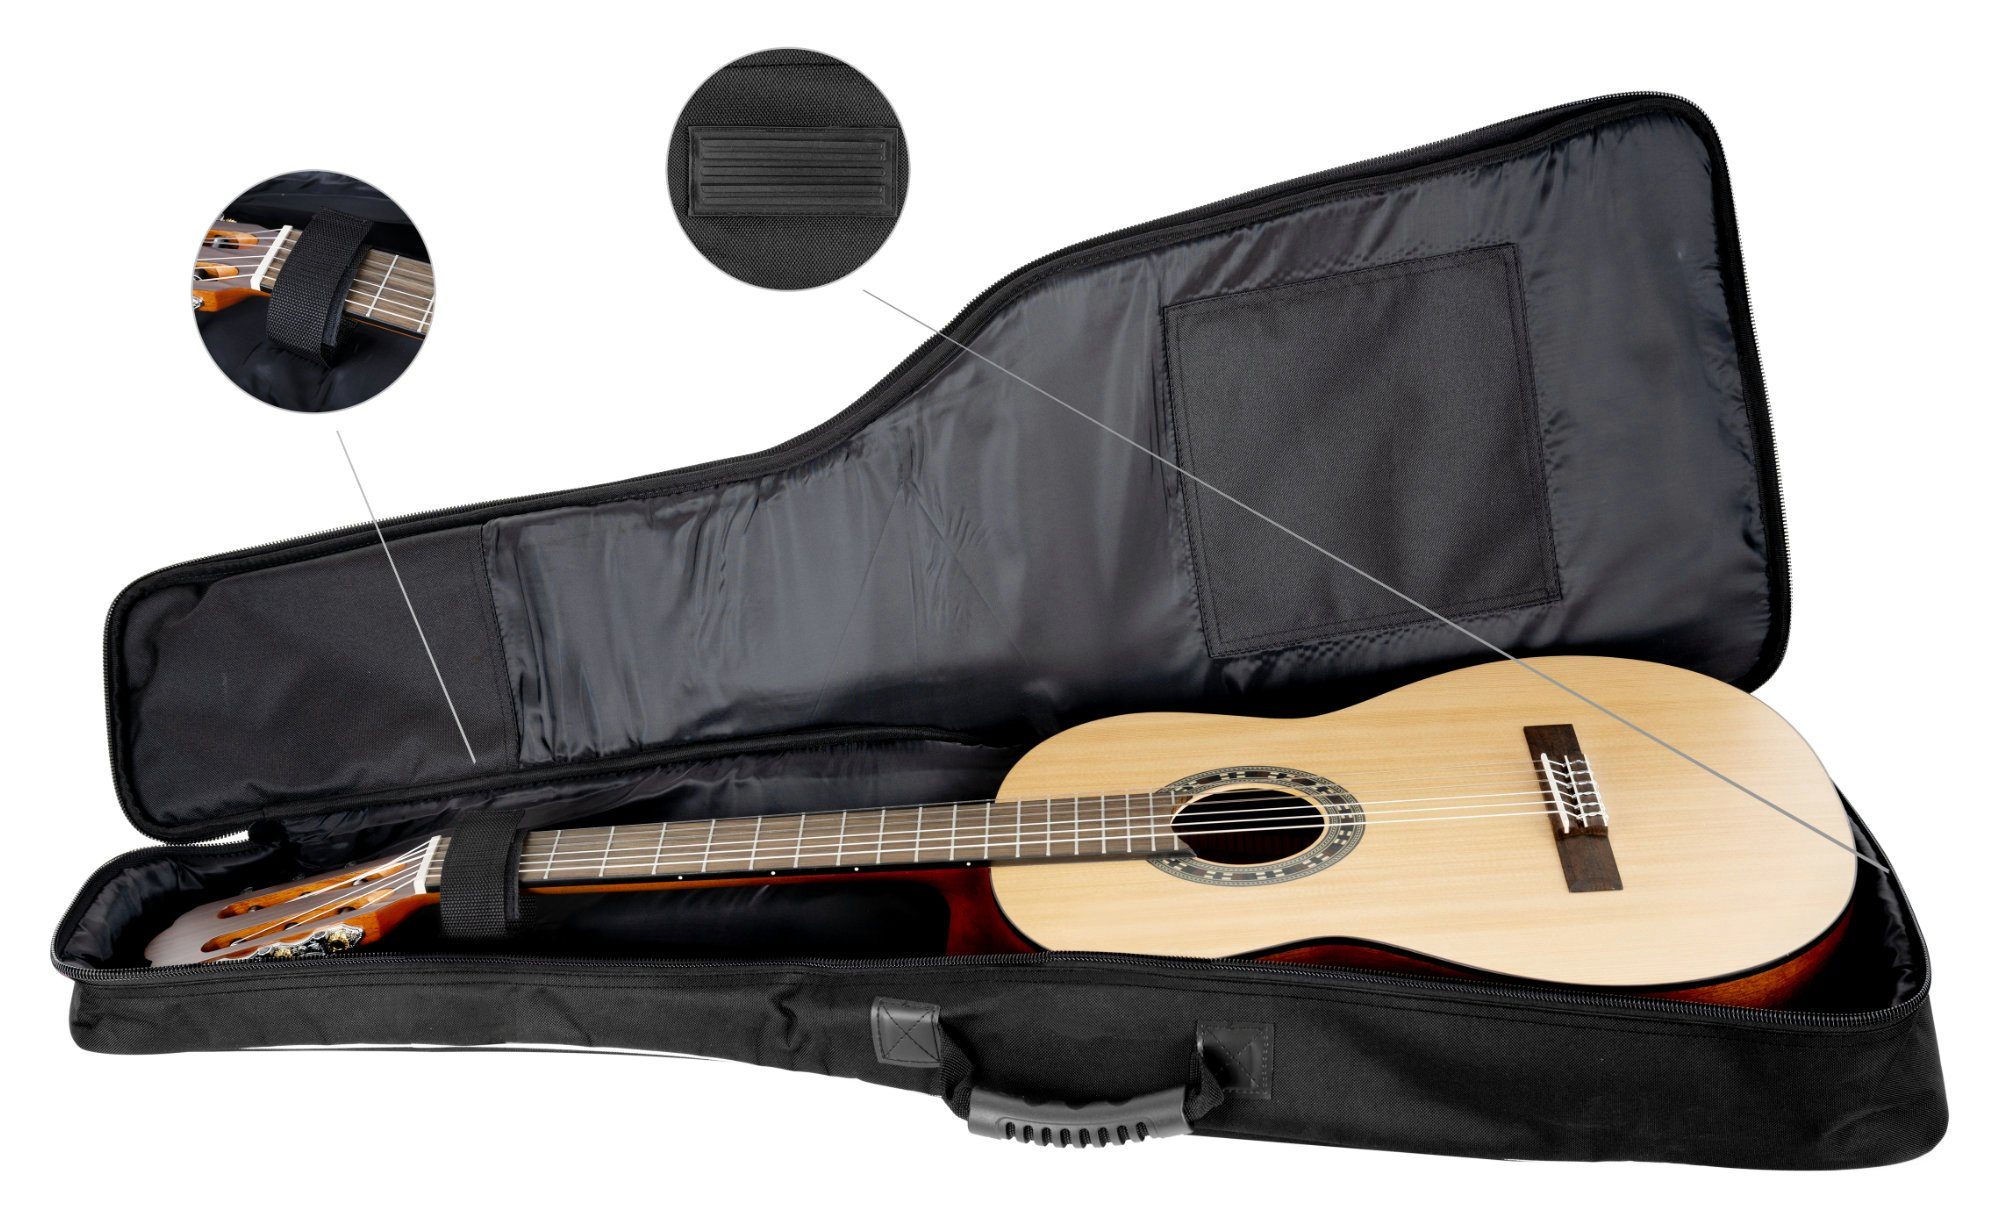 Rocktile Gitarrentasche (Gigbag Komfort-Griff Klassik-Gitarrentasche für inkl. 2 geformter Noten/Zubehör), Polsterung, 1/2-Größe Ergonomisch weicher Fronttaschen Schwarz mit